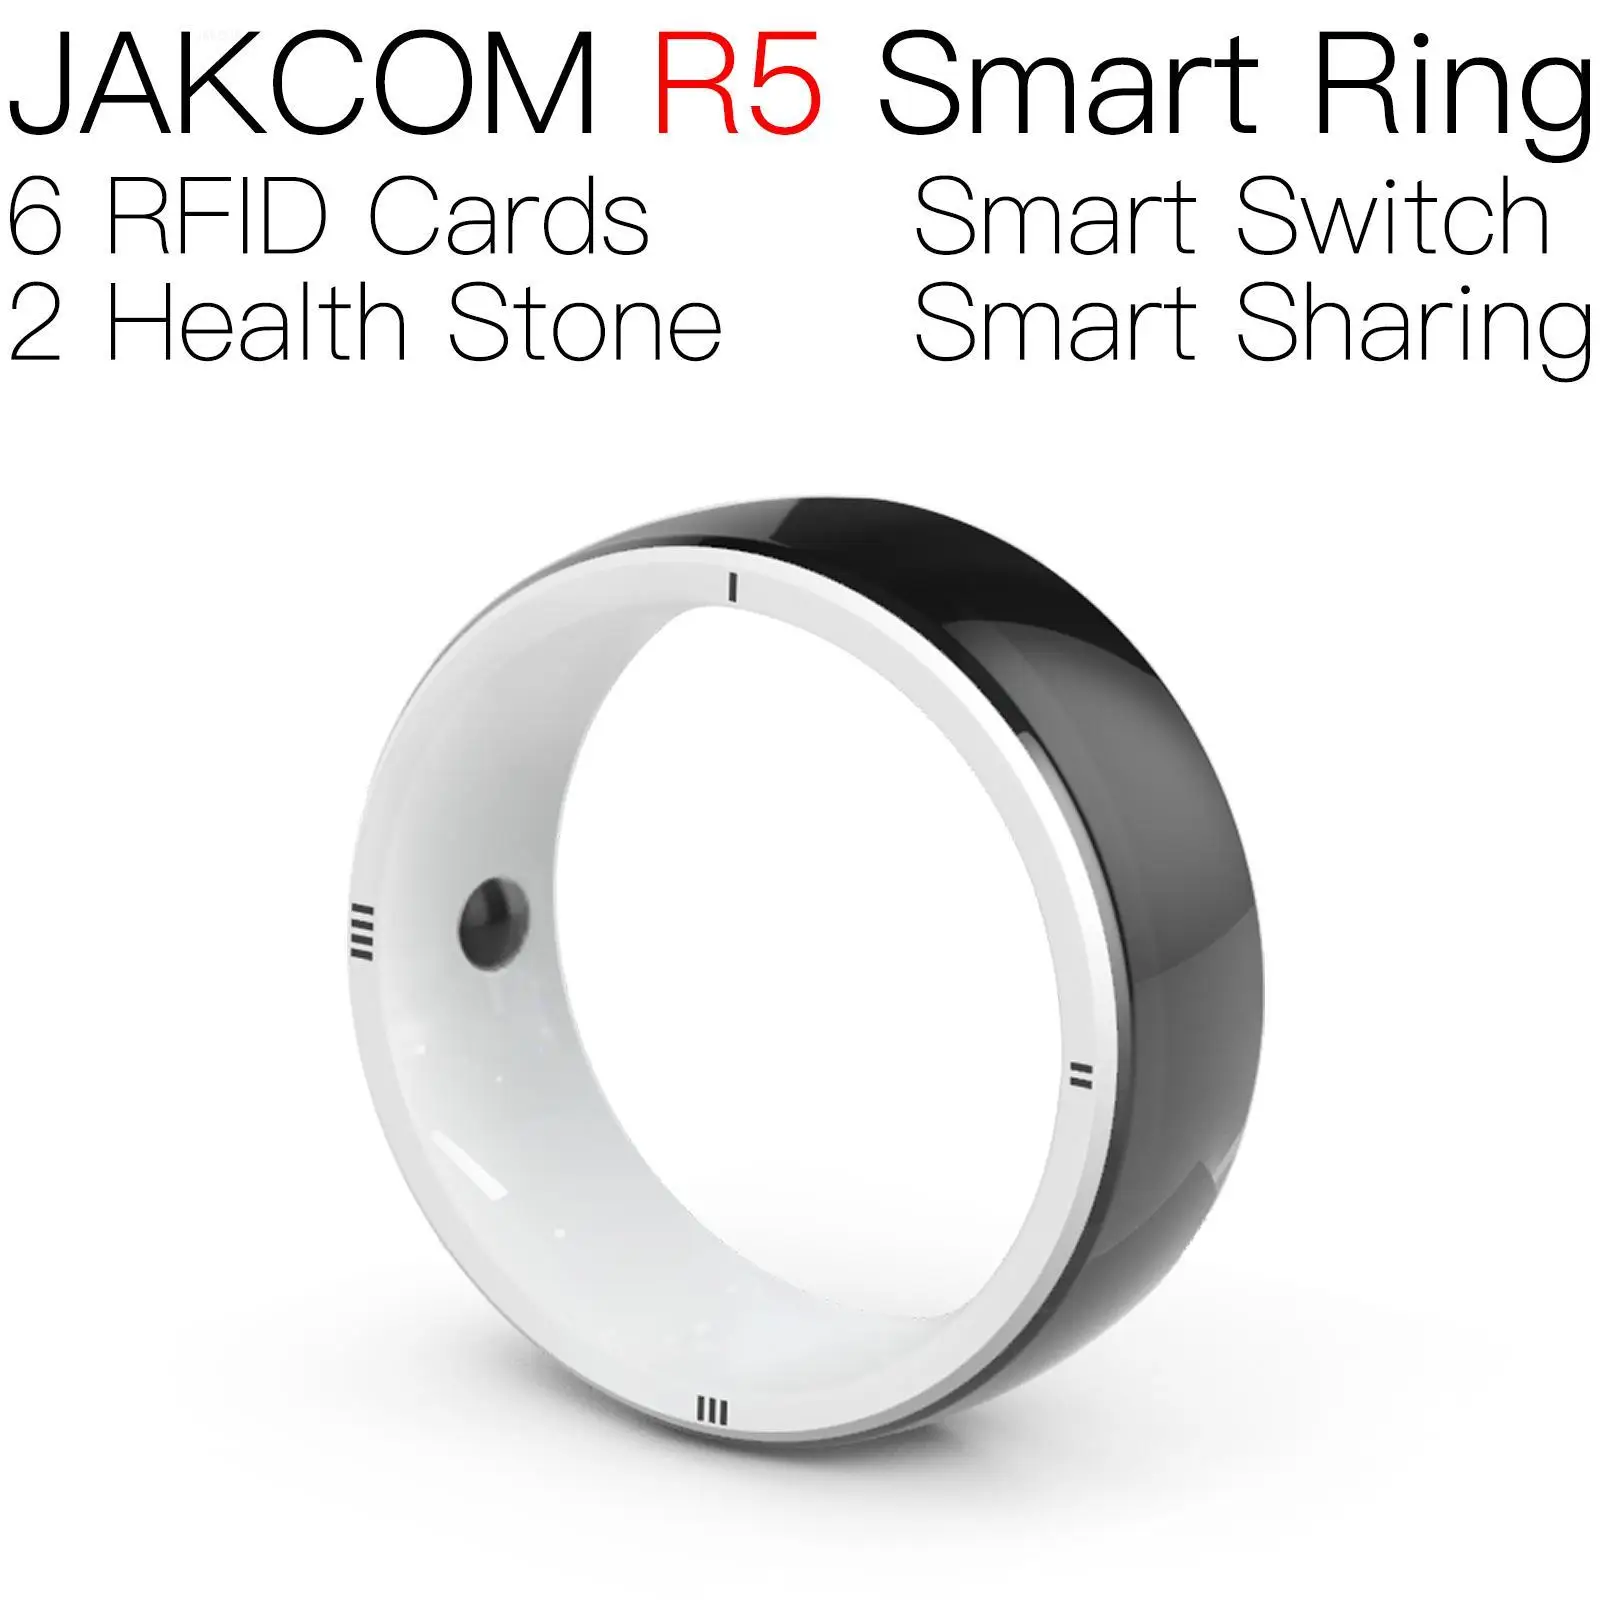 

Умное кольцо JAKCOM R5, лучше, чем логотип, брелок, карта, микрочипы для ПК, id 125 pulseras rfid 4305, мини-гольф, деревянная бирка без рисунка